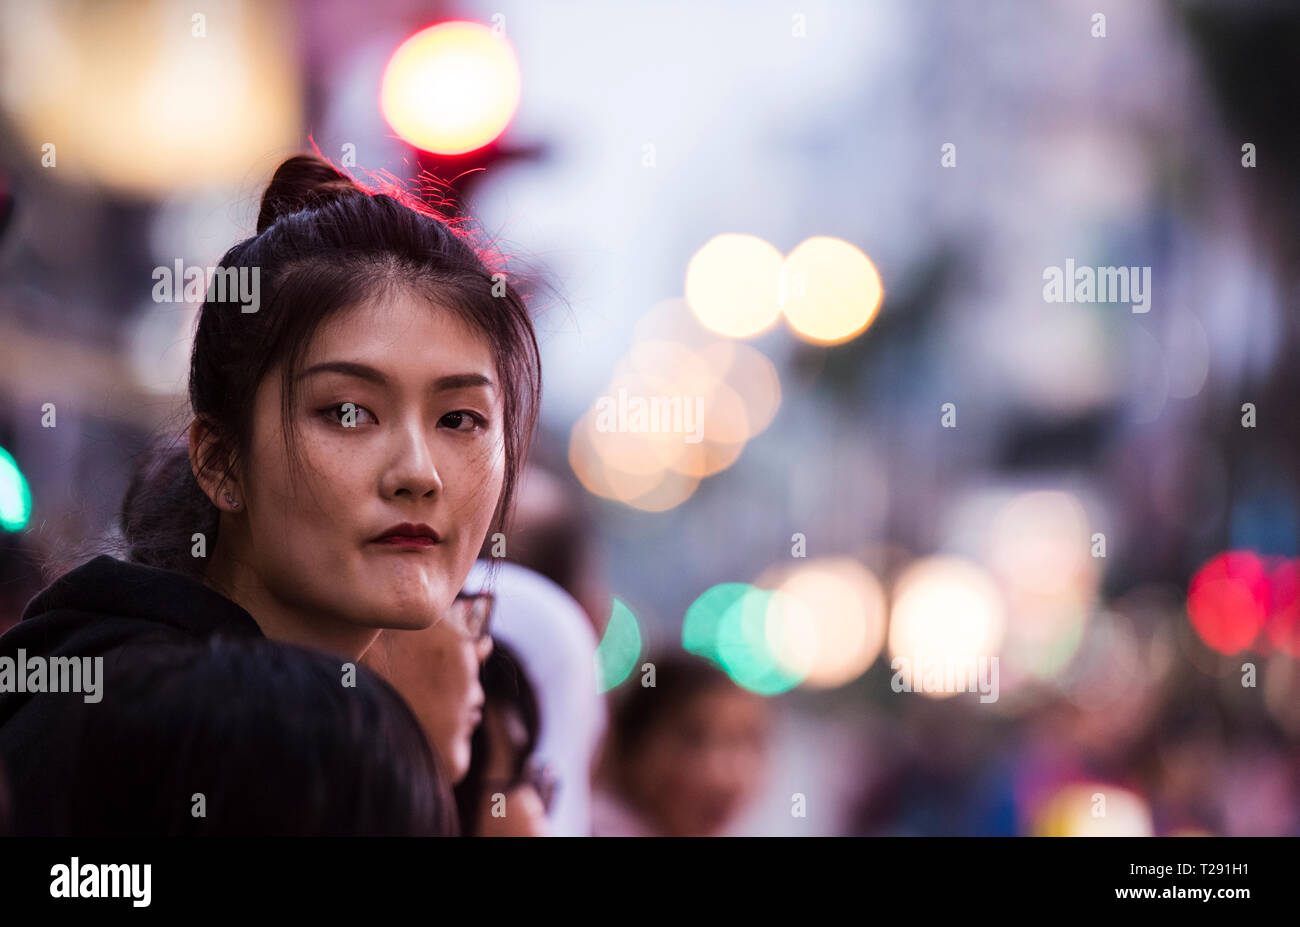 Portrait von Frau direkt an der Kamera suchen, während das chinesische Neujahr feiern, Kowloon, Hong Kong Stockfoto